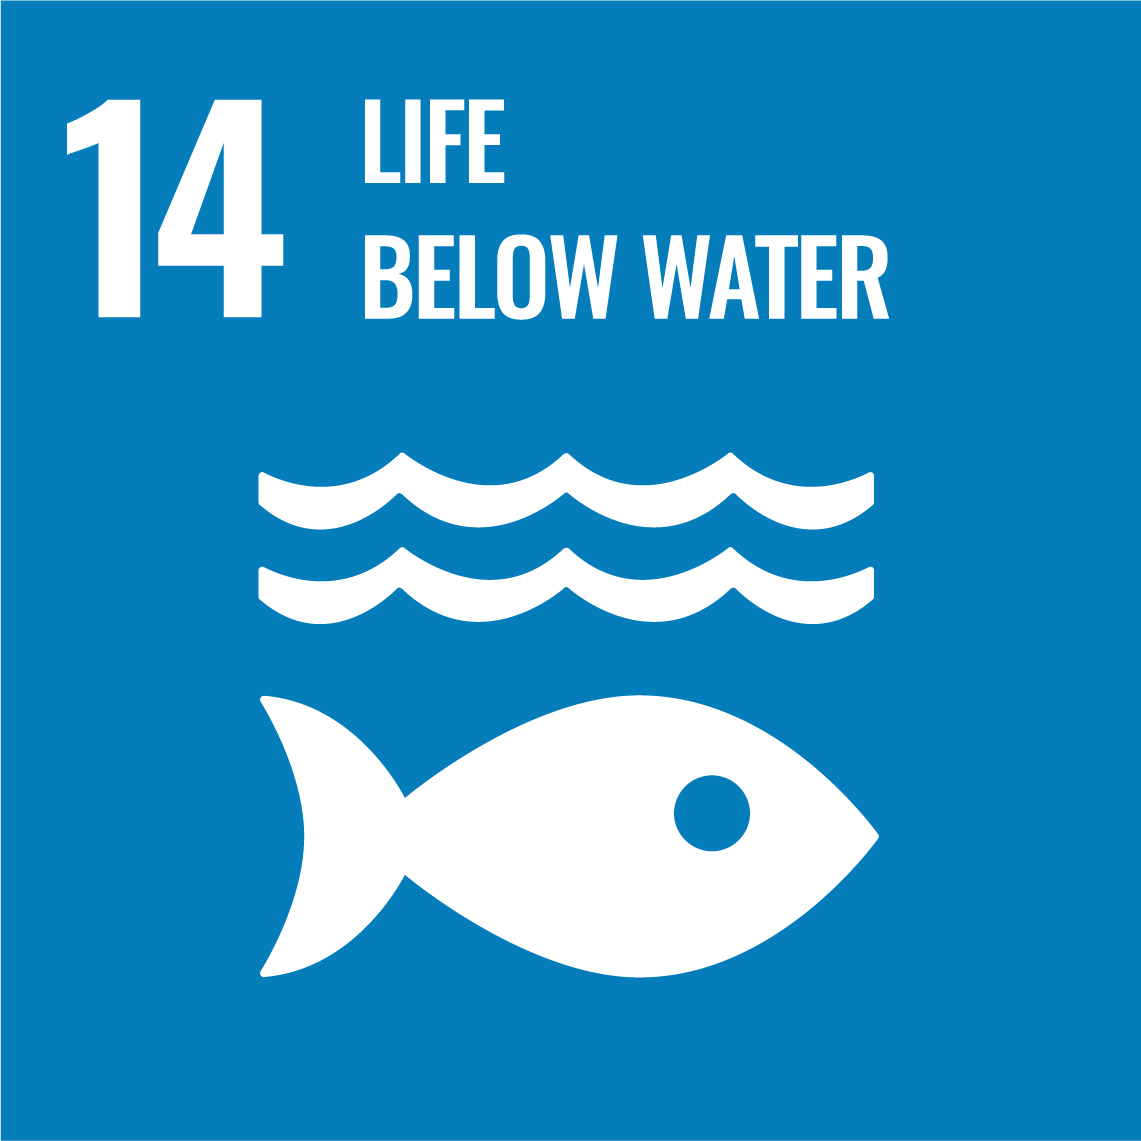 Sustainable Development Goals 14 - Life below water